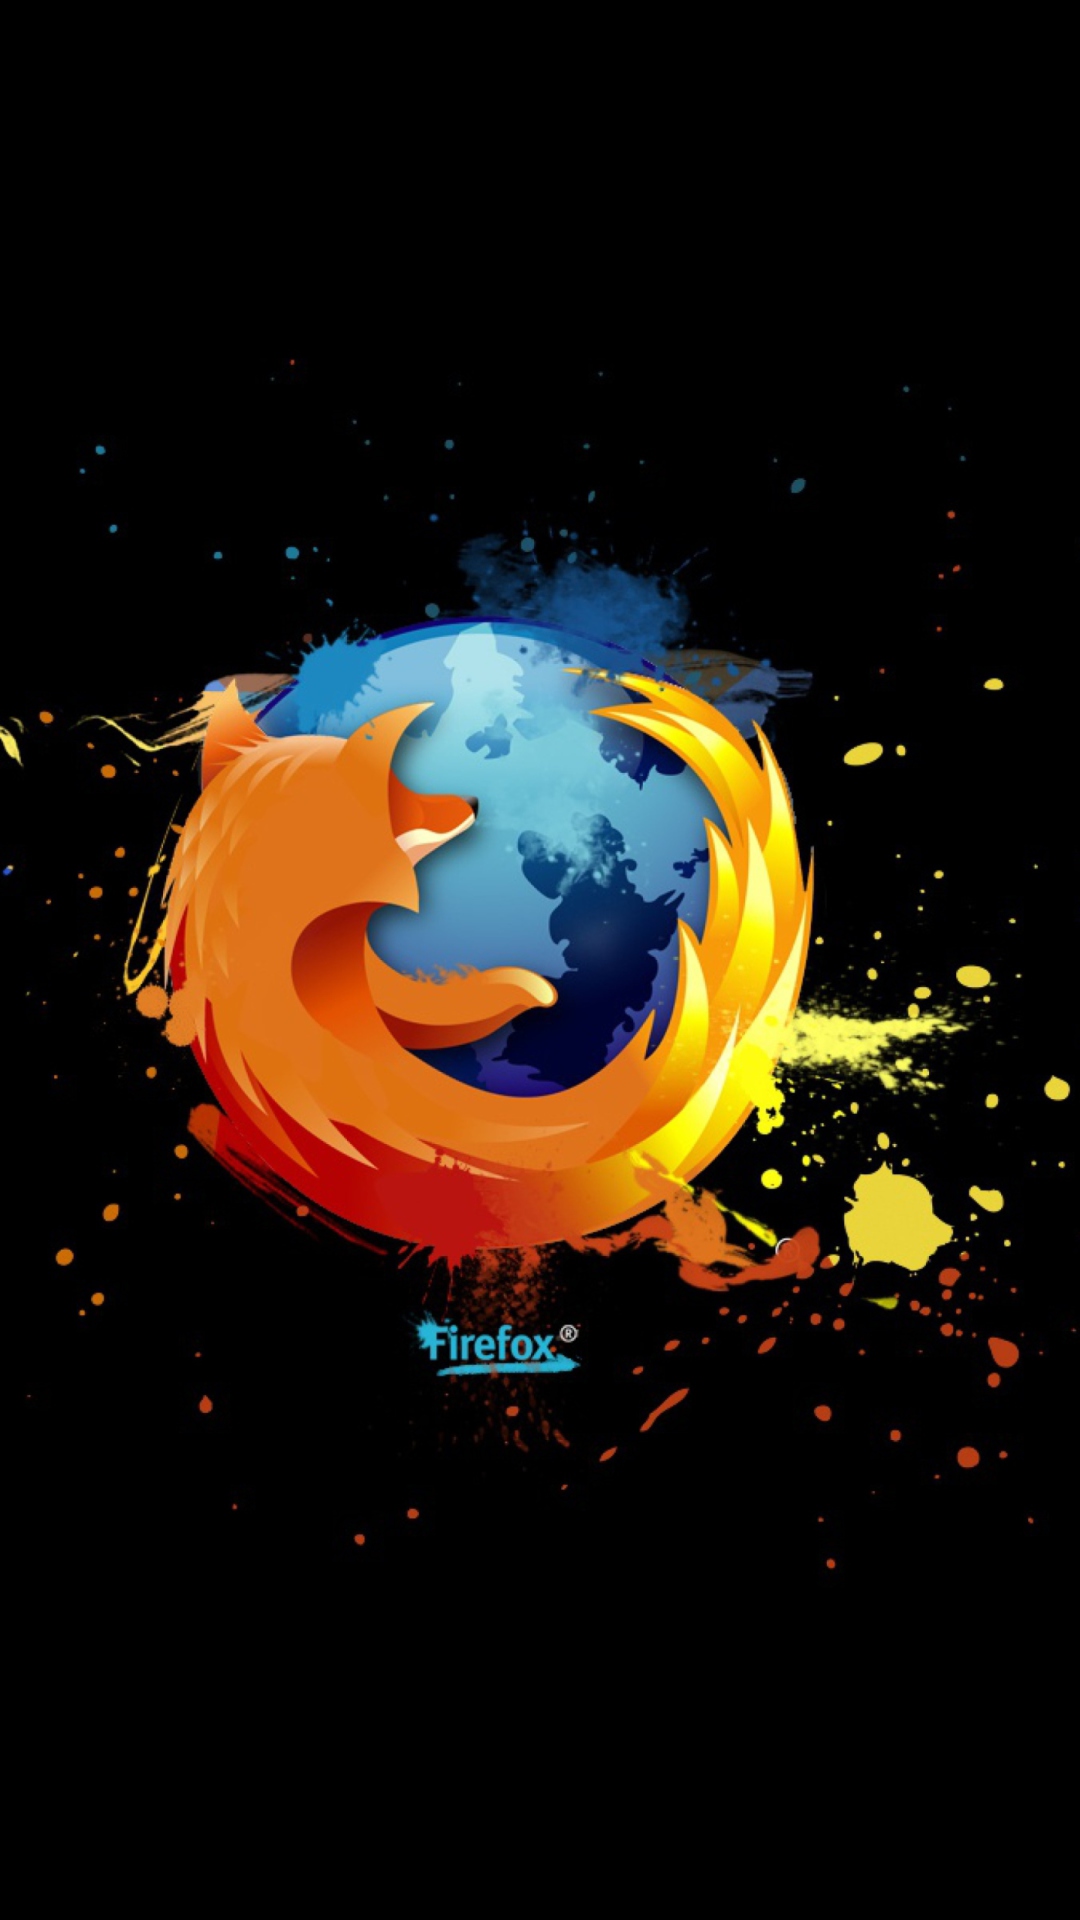 Обои Firefox Logo 1080x1920